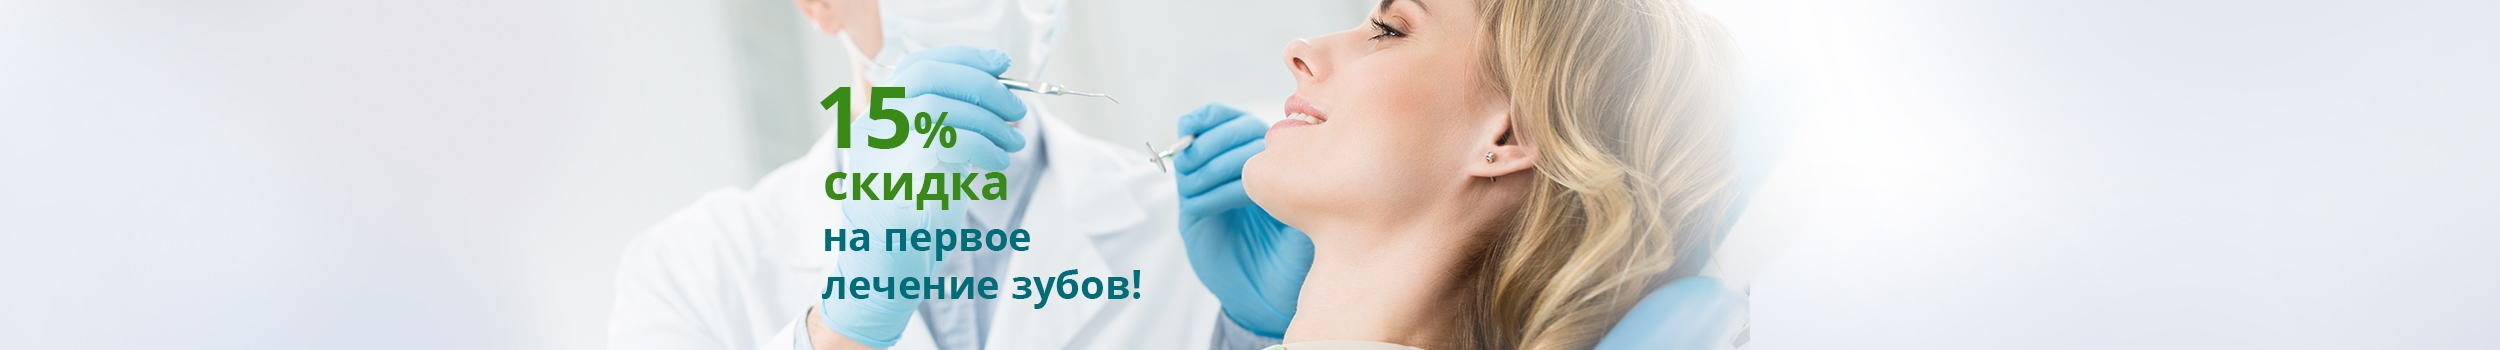 Хирургиялық стоматология: ерекшеліктері